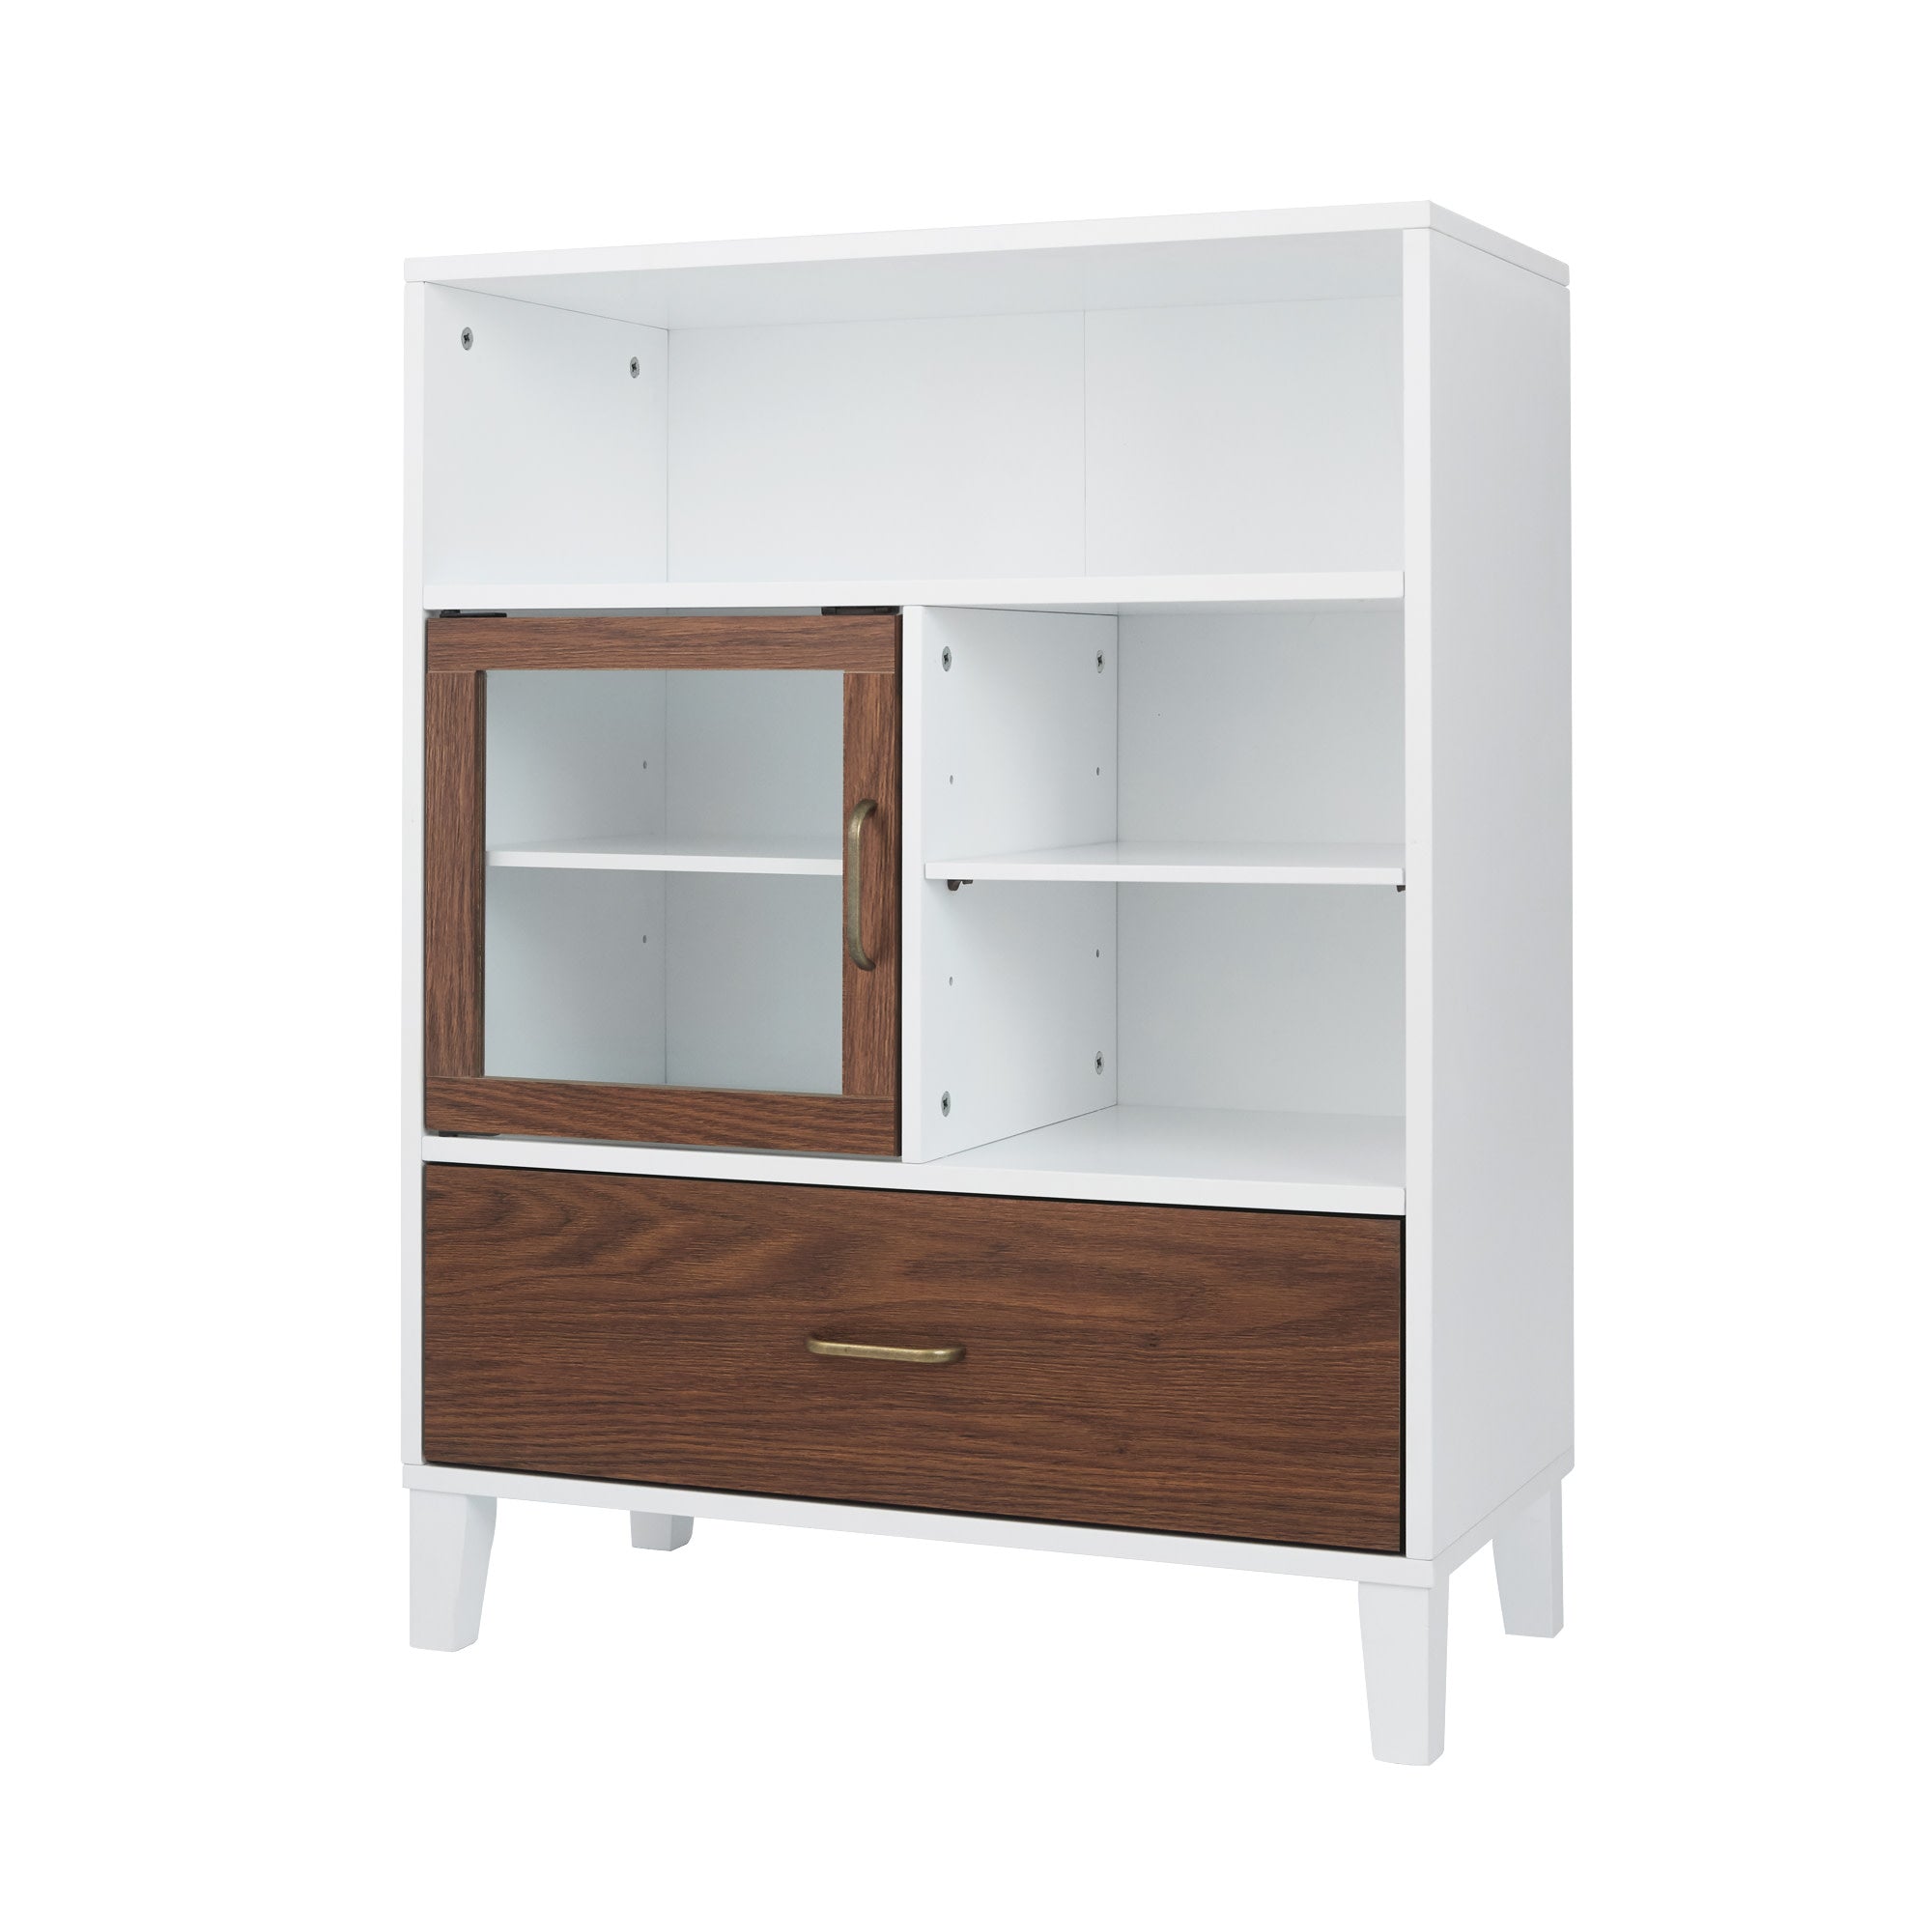 Teamson Home Tyler Modern Wooden Floor Storage Cabinet with Drawer, Walnut/White